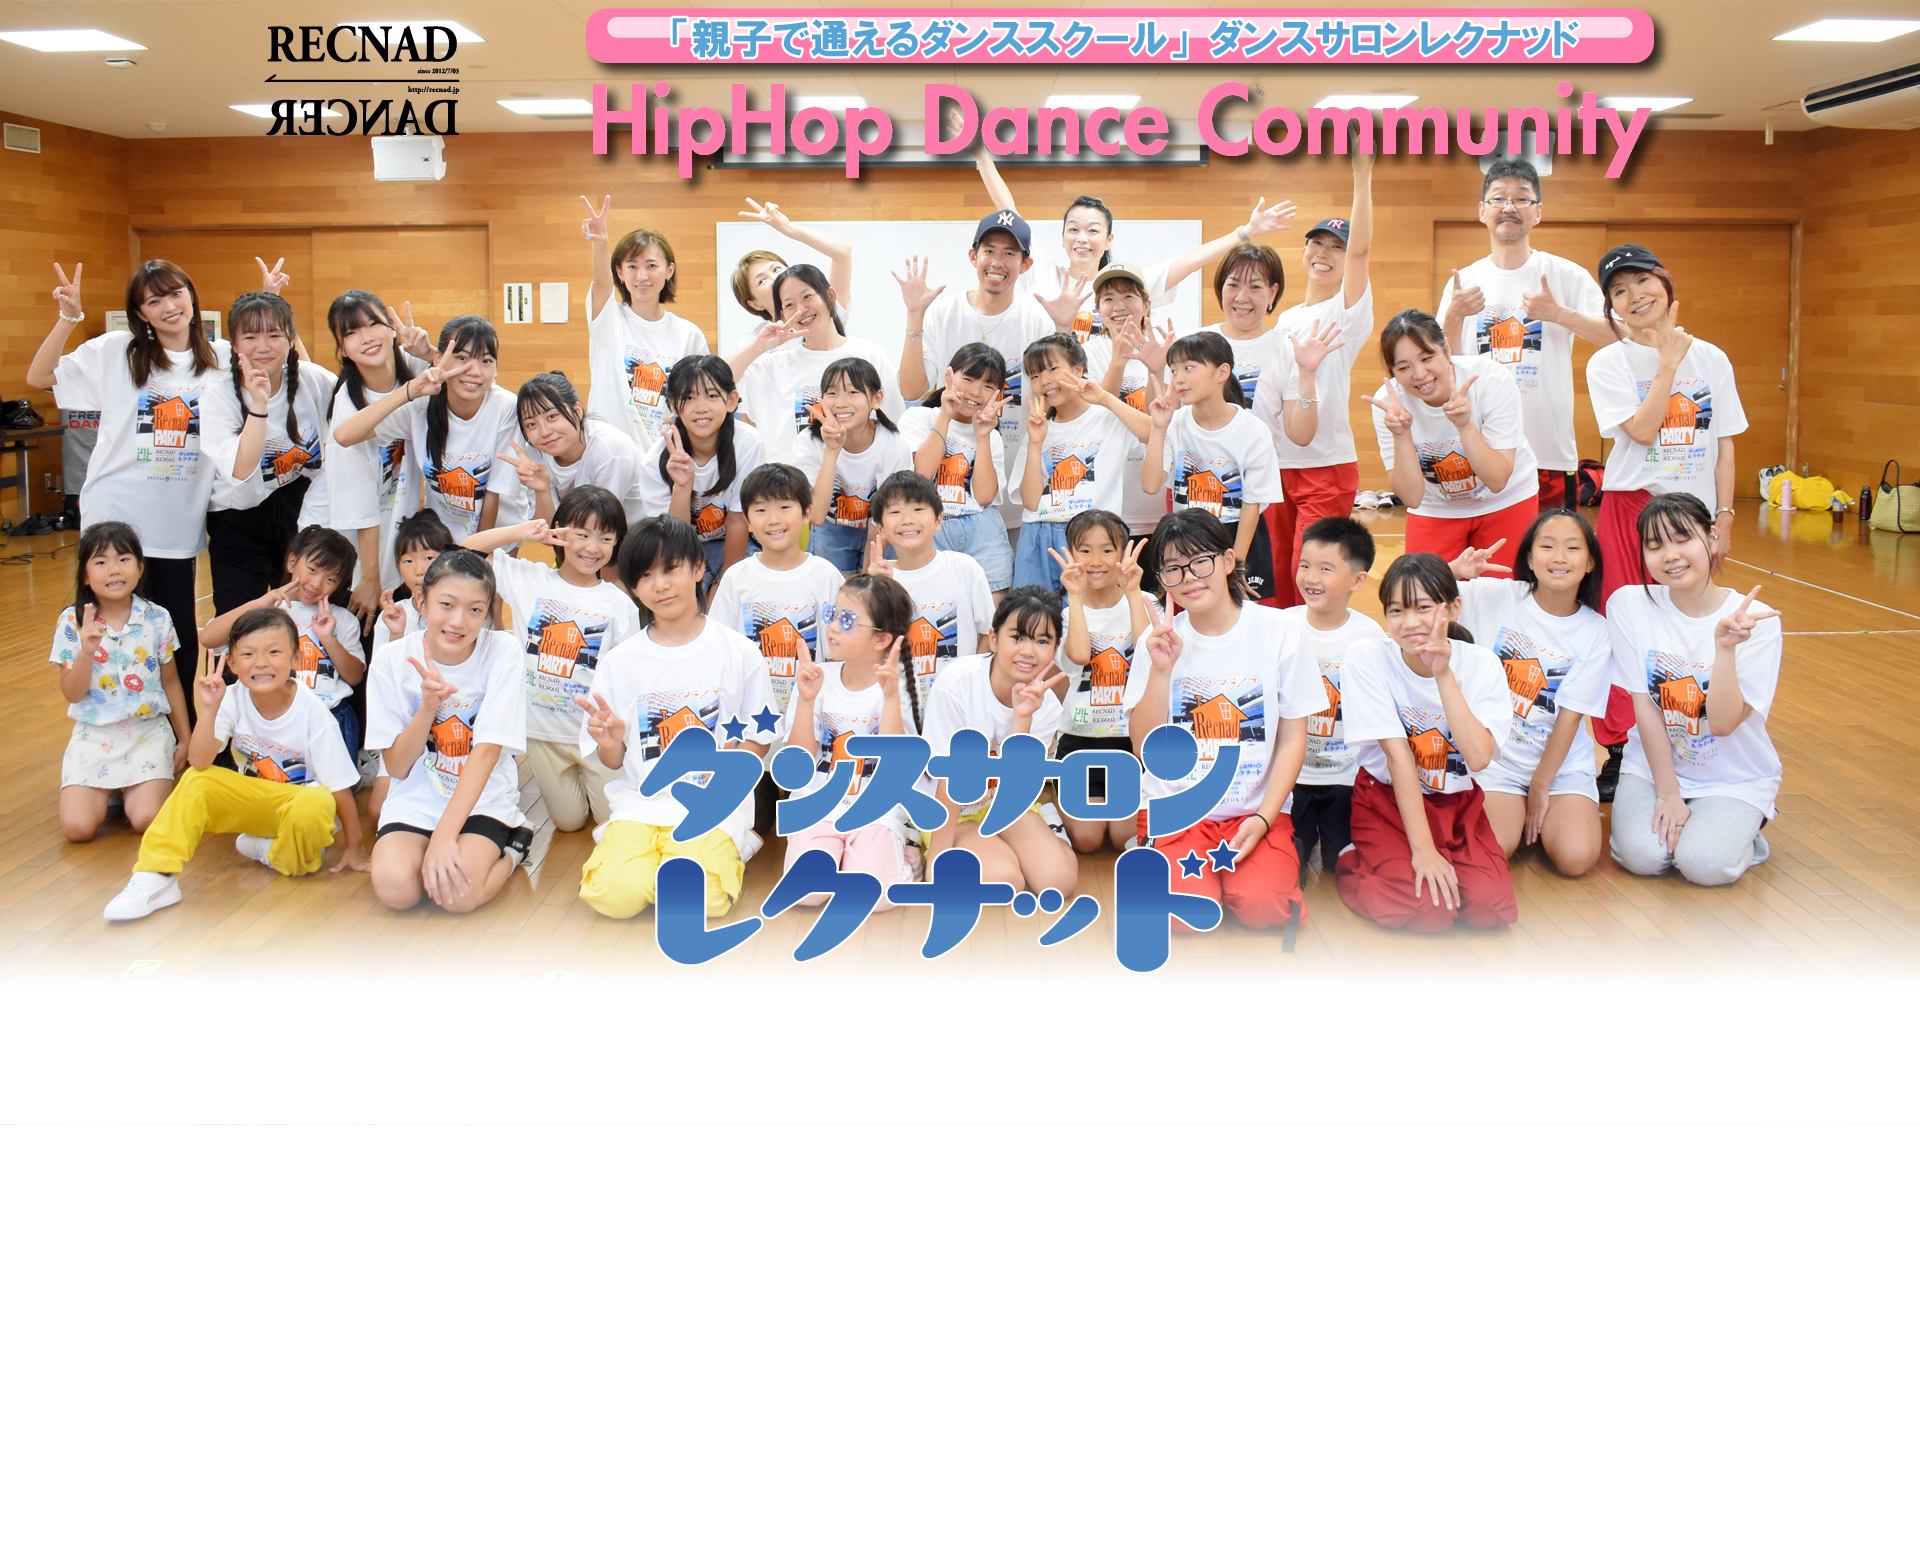 活動4年「親子で通えるダンススクール」| 品川区 ダンスサロンレクナッド